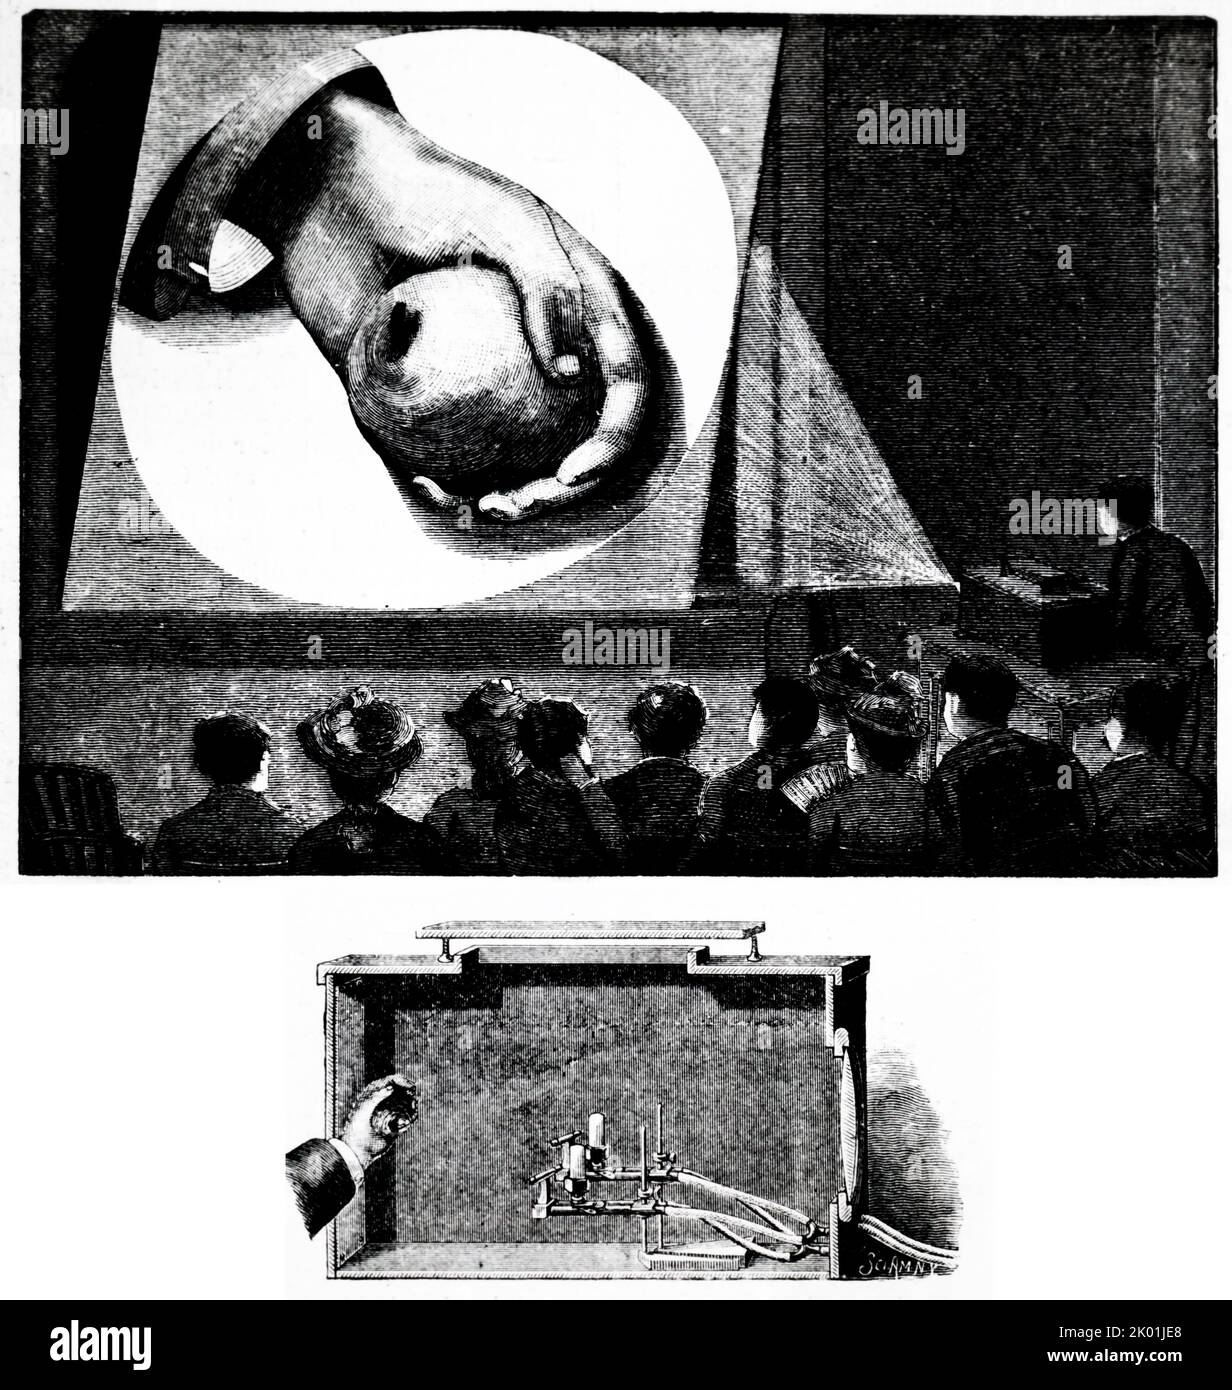 Geboxtes Megaskop, das zum Projekieren undurchsichtiger Objekte verwendet wird (Apfel in Demonstratorhand). Von La Science Illustree, Paris, 1891. Stockfoto